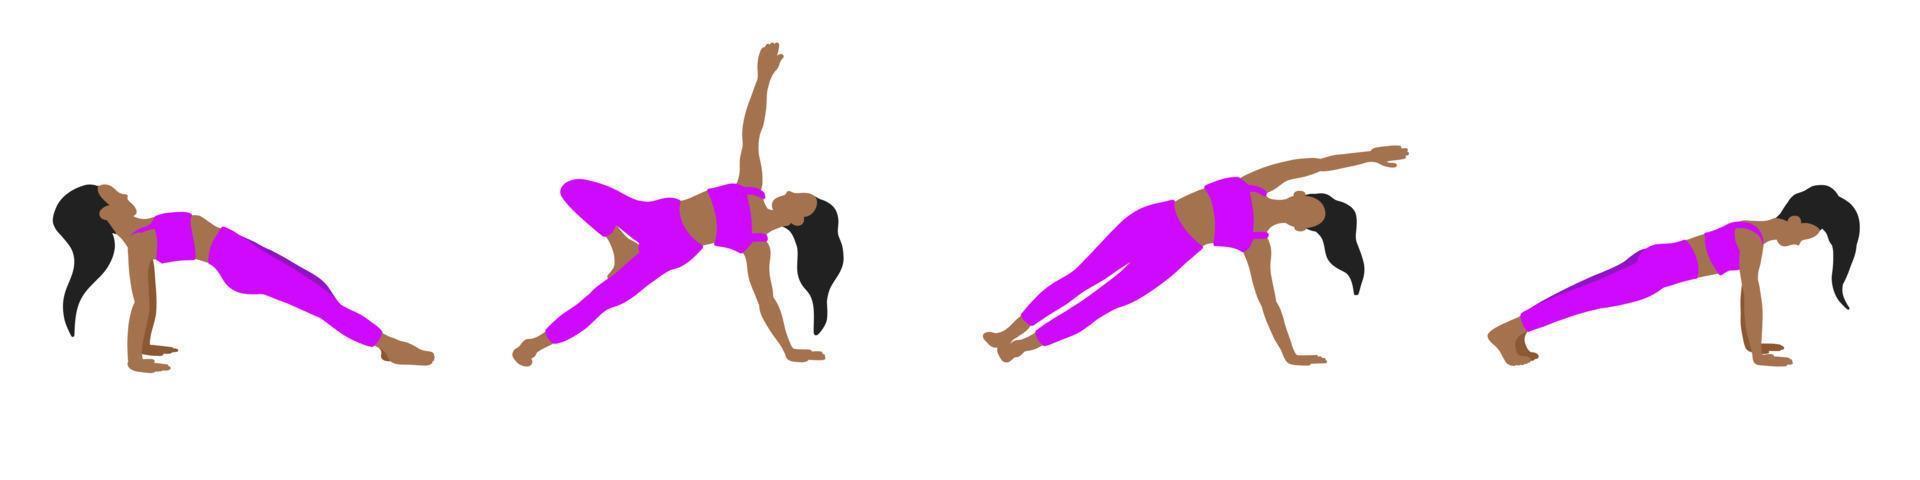 flexibilidad yoga poses recopilación. africano americano pelo largo femenino, dama, mujer, muchacha. pilates, mental salud, capacitación, gimnasia. vector ilustración en dibujos animados plano estilo aislado en blanco antecedentes.